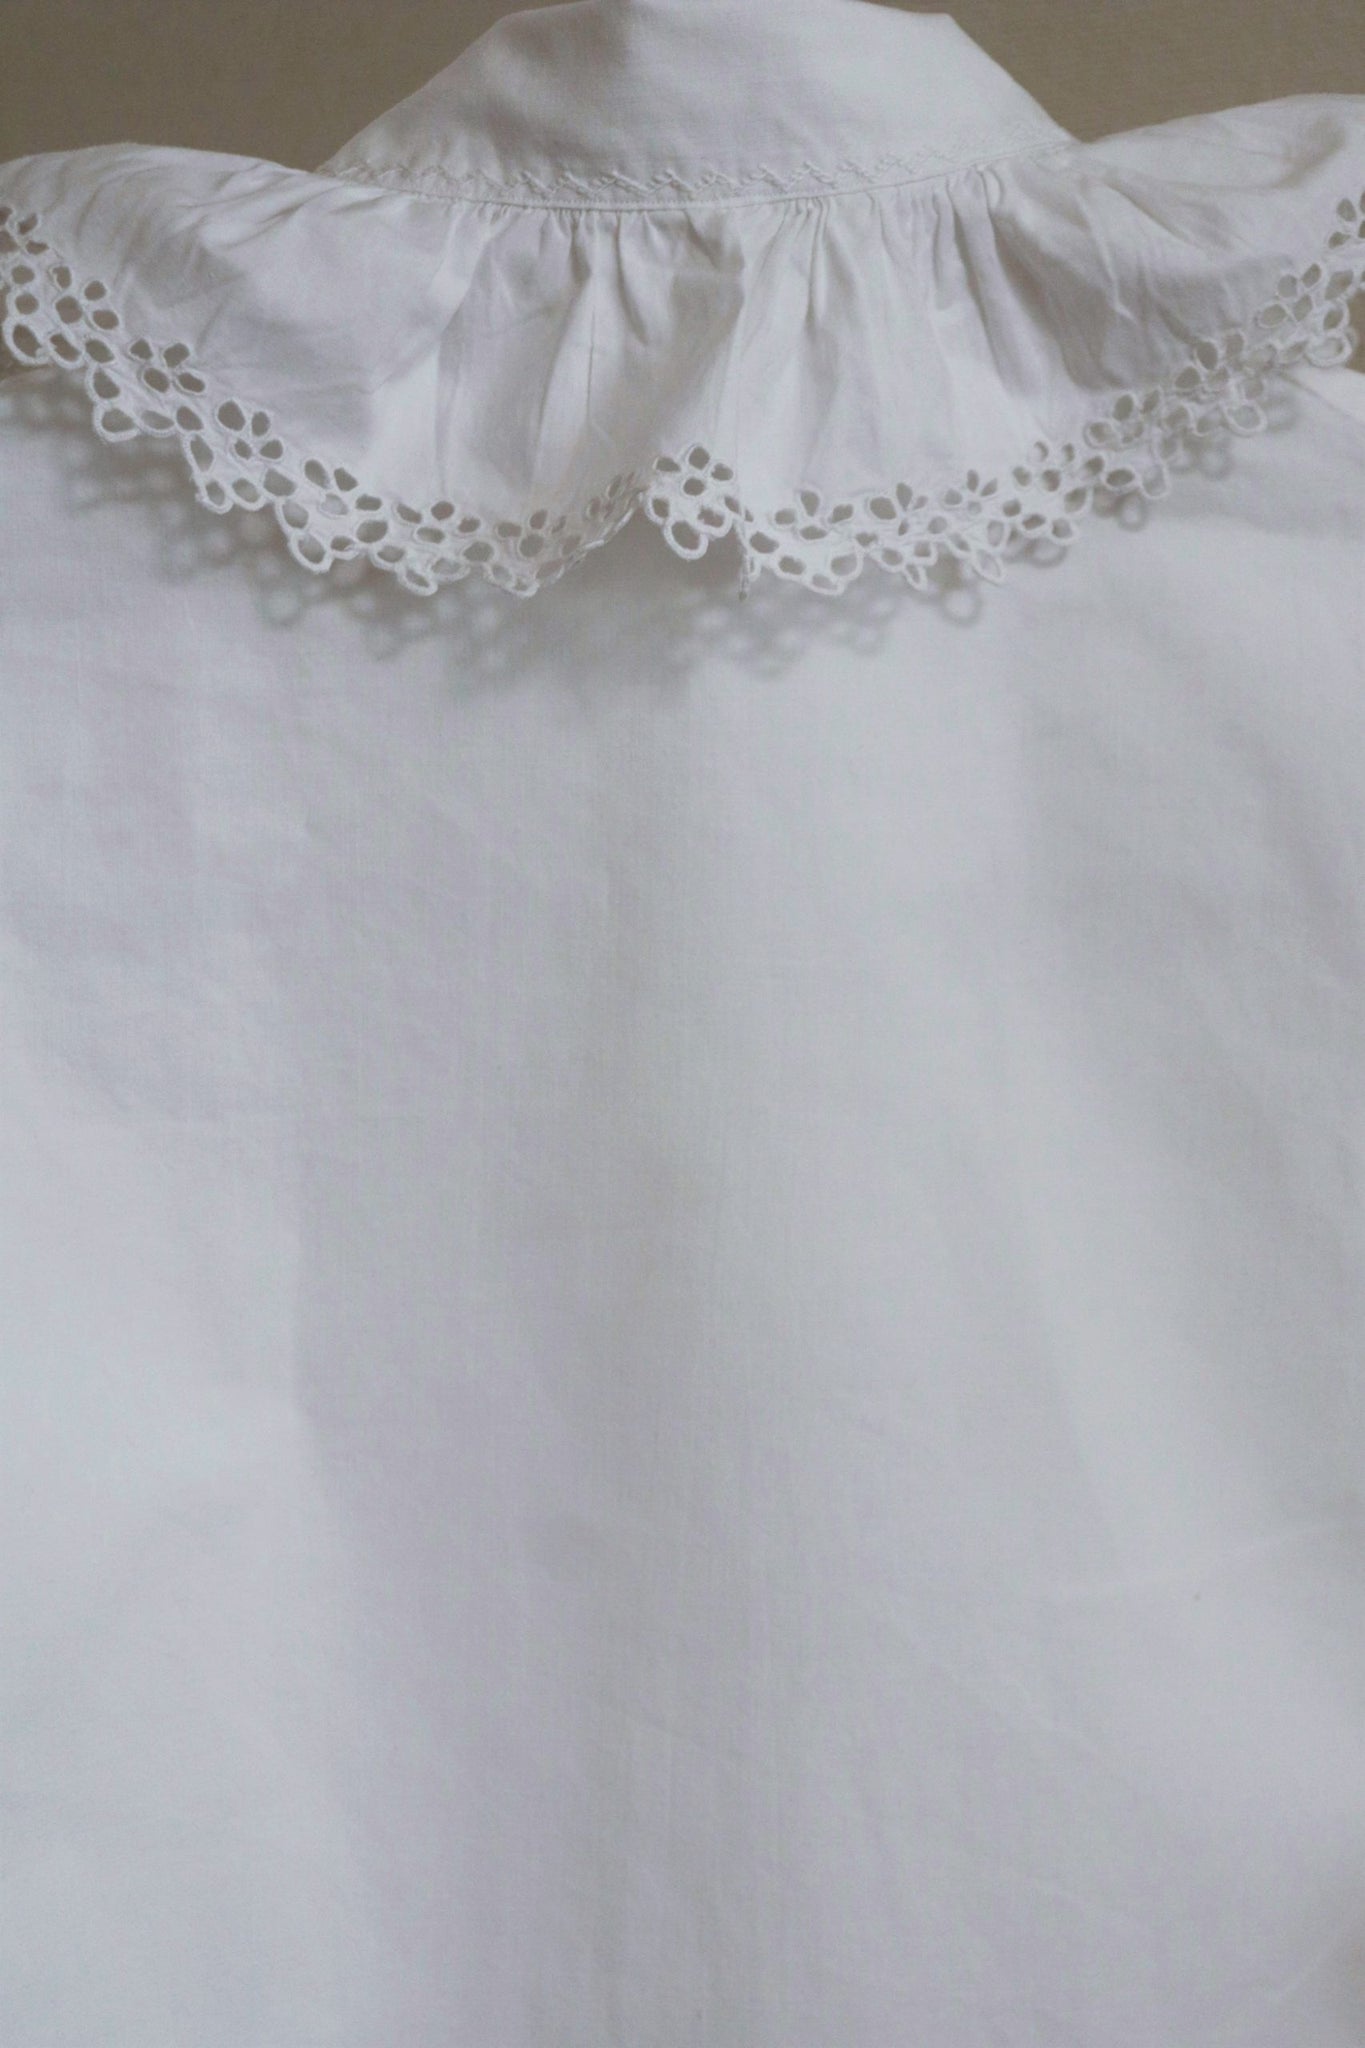 1910s Antique Cotton Blouse White